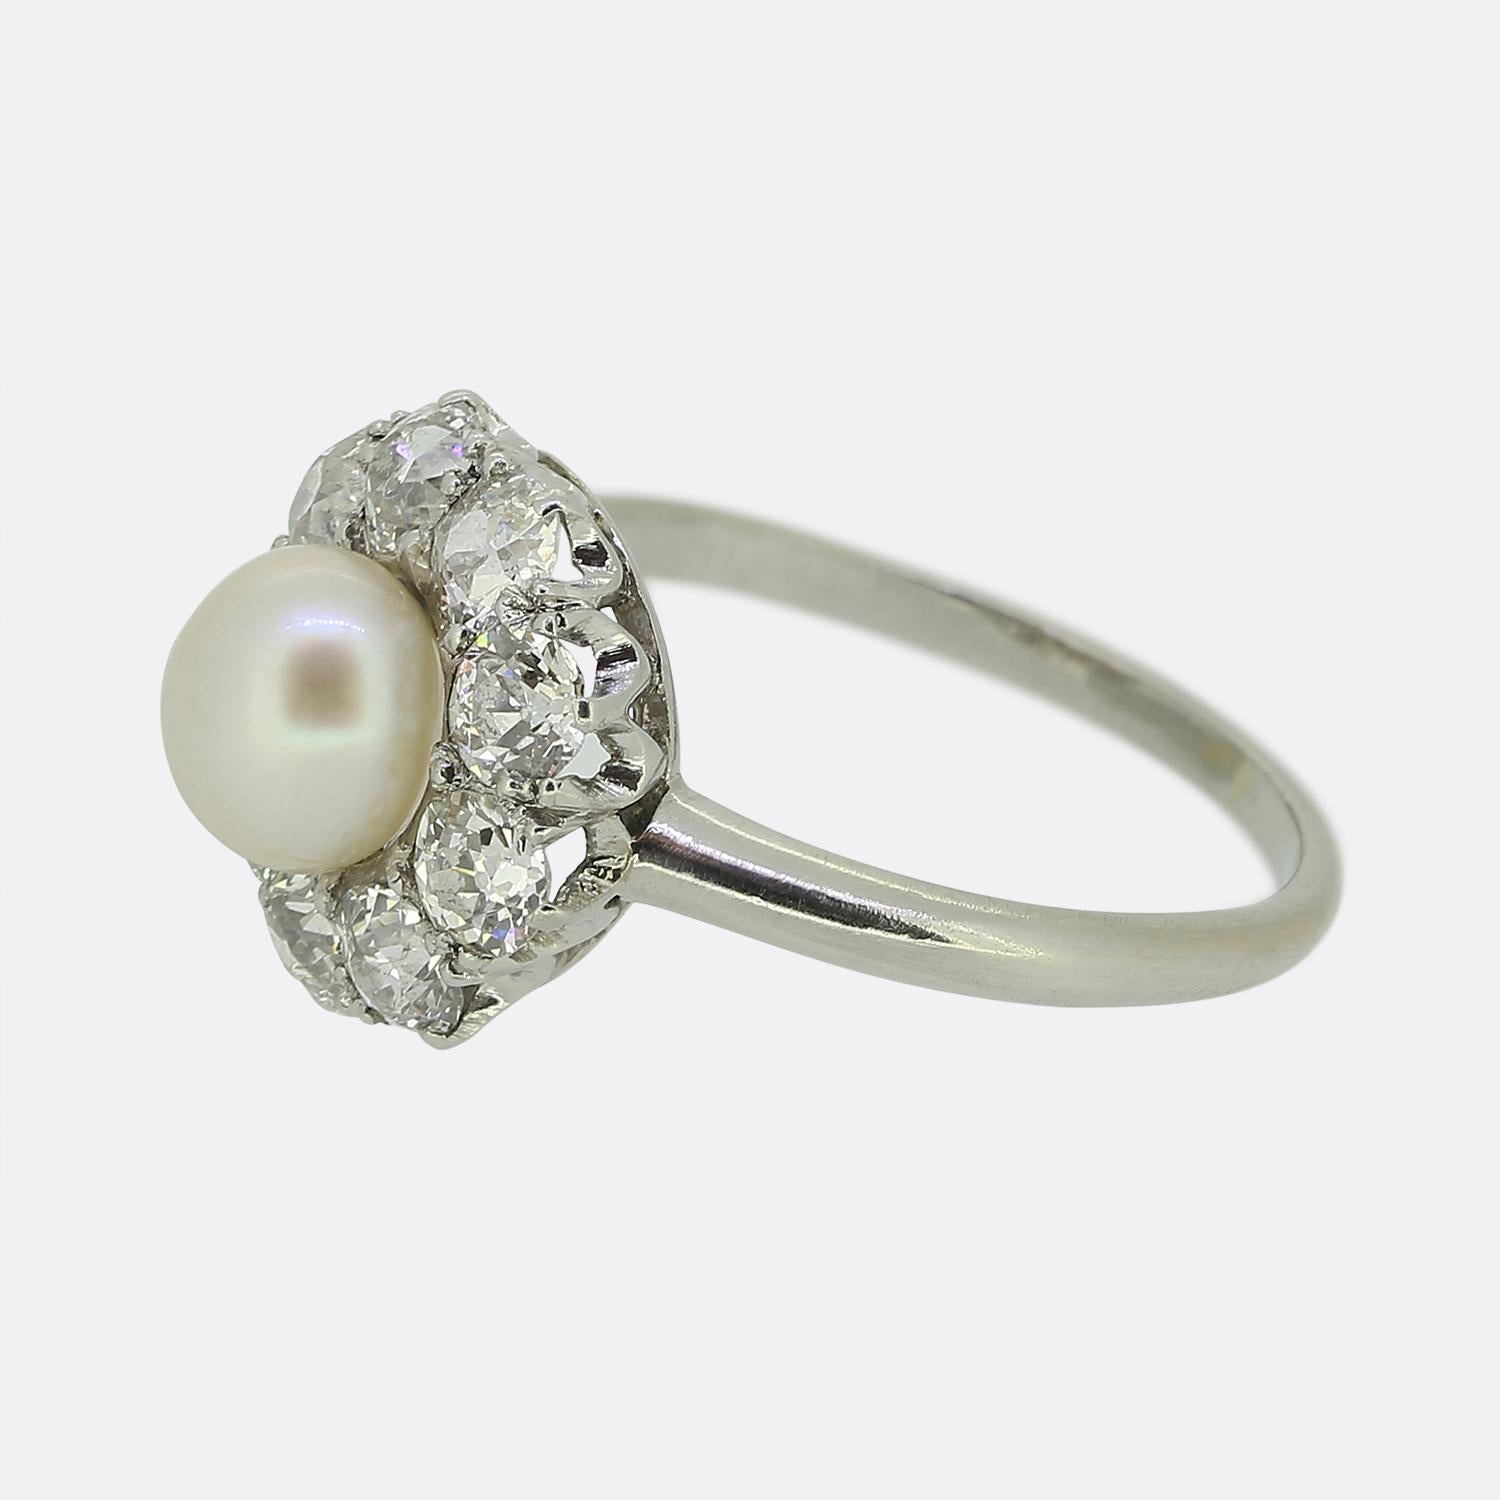 Hier haben wir einen prächtigen Perlen- und Diamantring aus der Anfangszeit des 20. In der Mitte der Vorderseite sitzt eine runde, weiße Naturperle mit schönem Glanz, die von gut abgestimmten, klobigen Diamanten im Altschliff umgeben ist. Der Ring